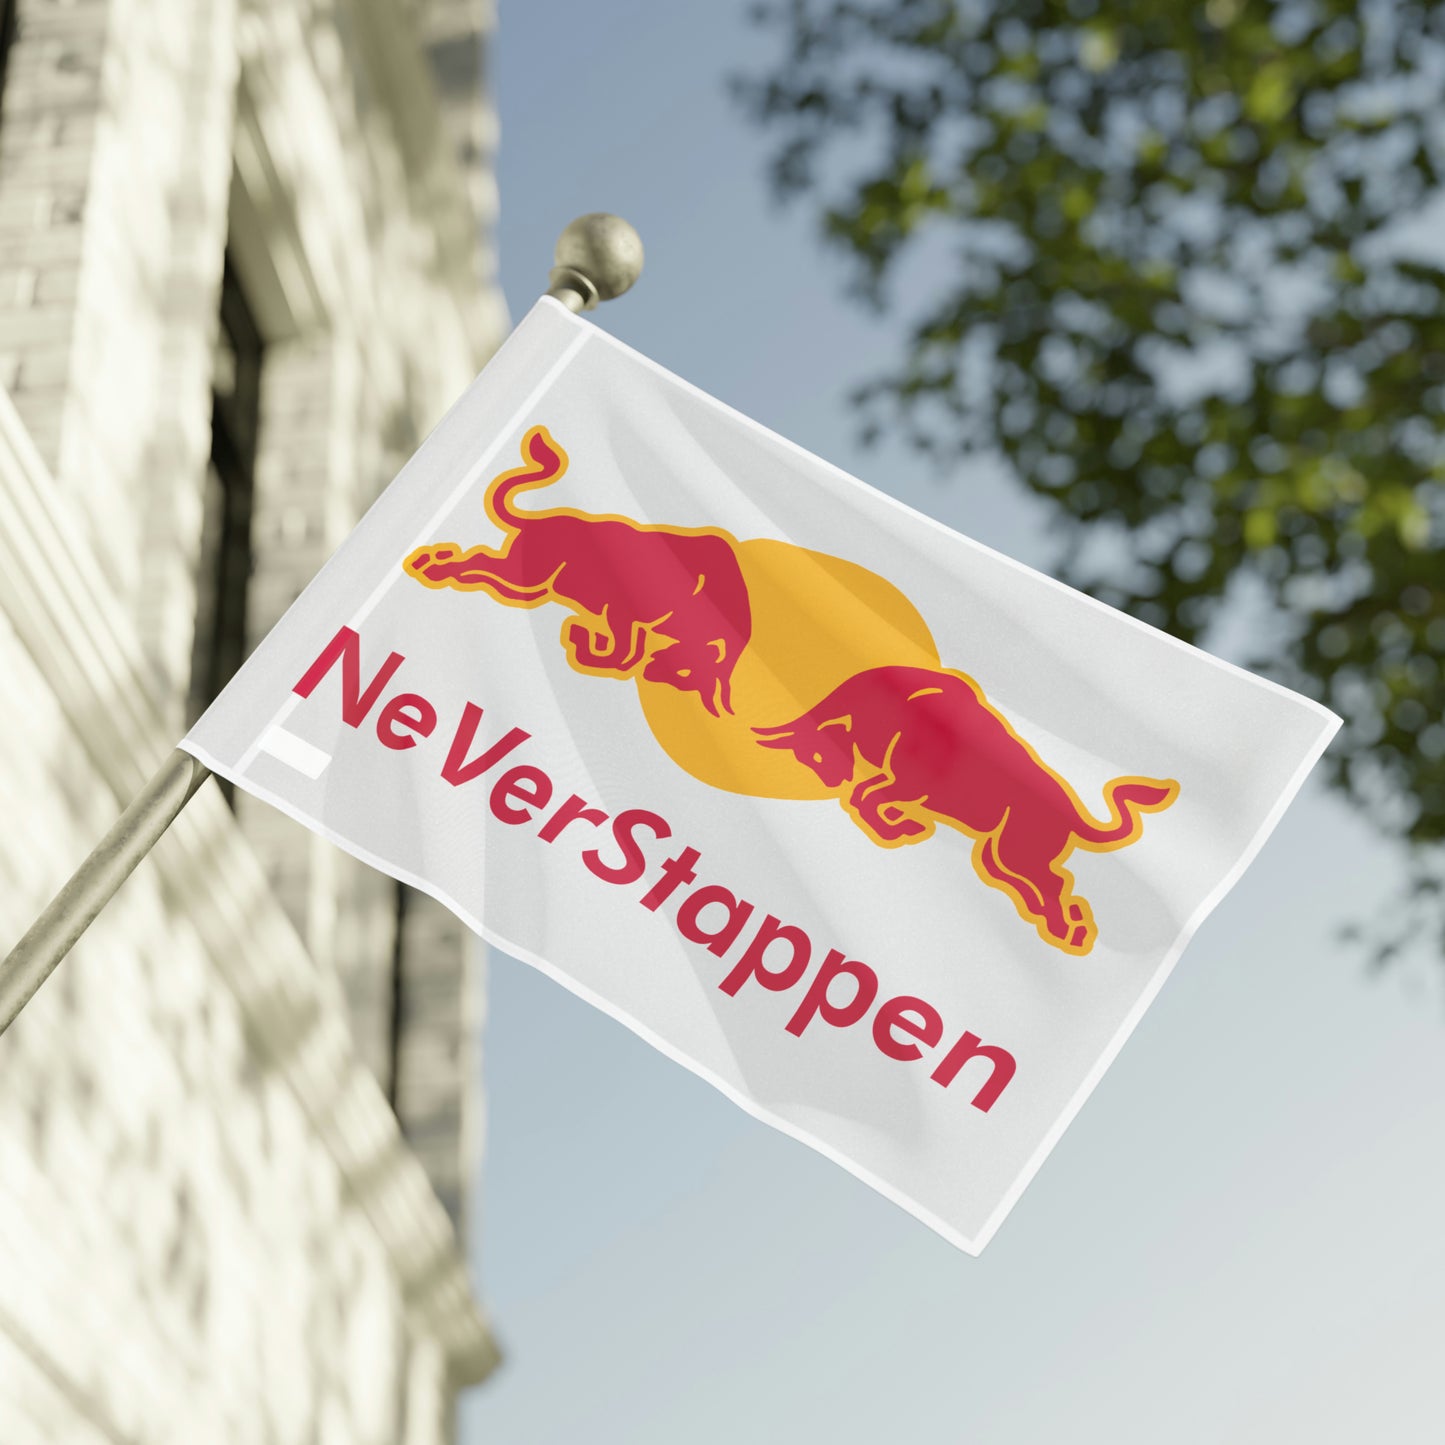 NeVerStappen Red Bull Formula 1 F1 Max Verstappen Flag Next Cult Brand F1, Max Verstappen, Red Bull